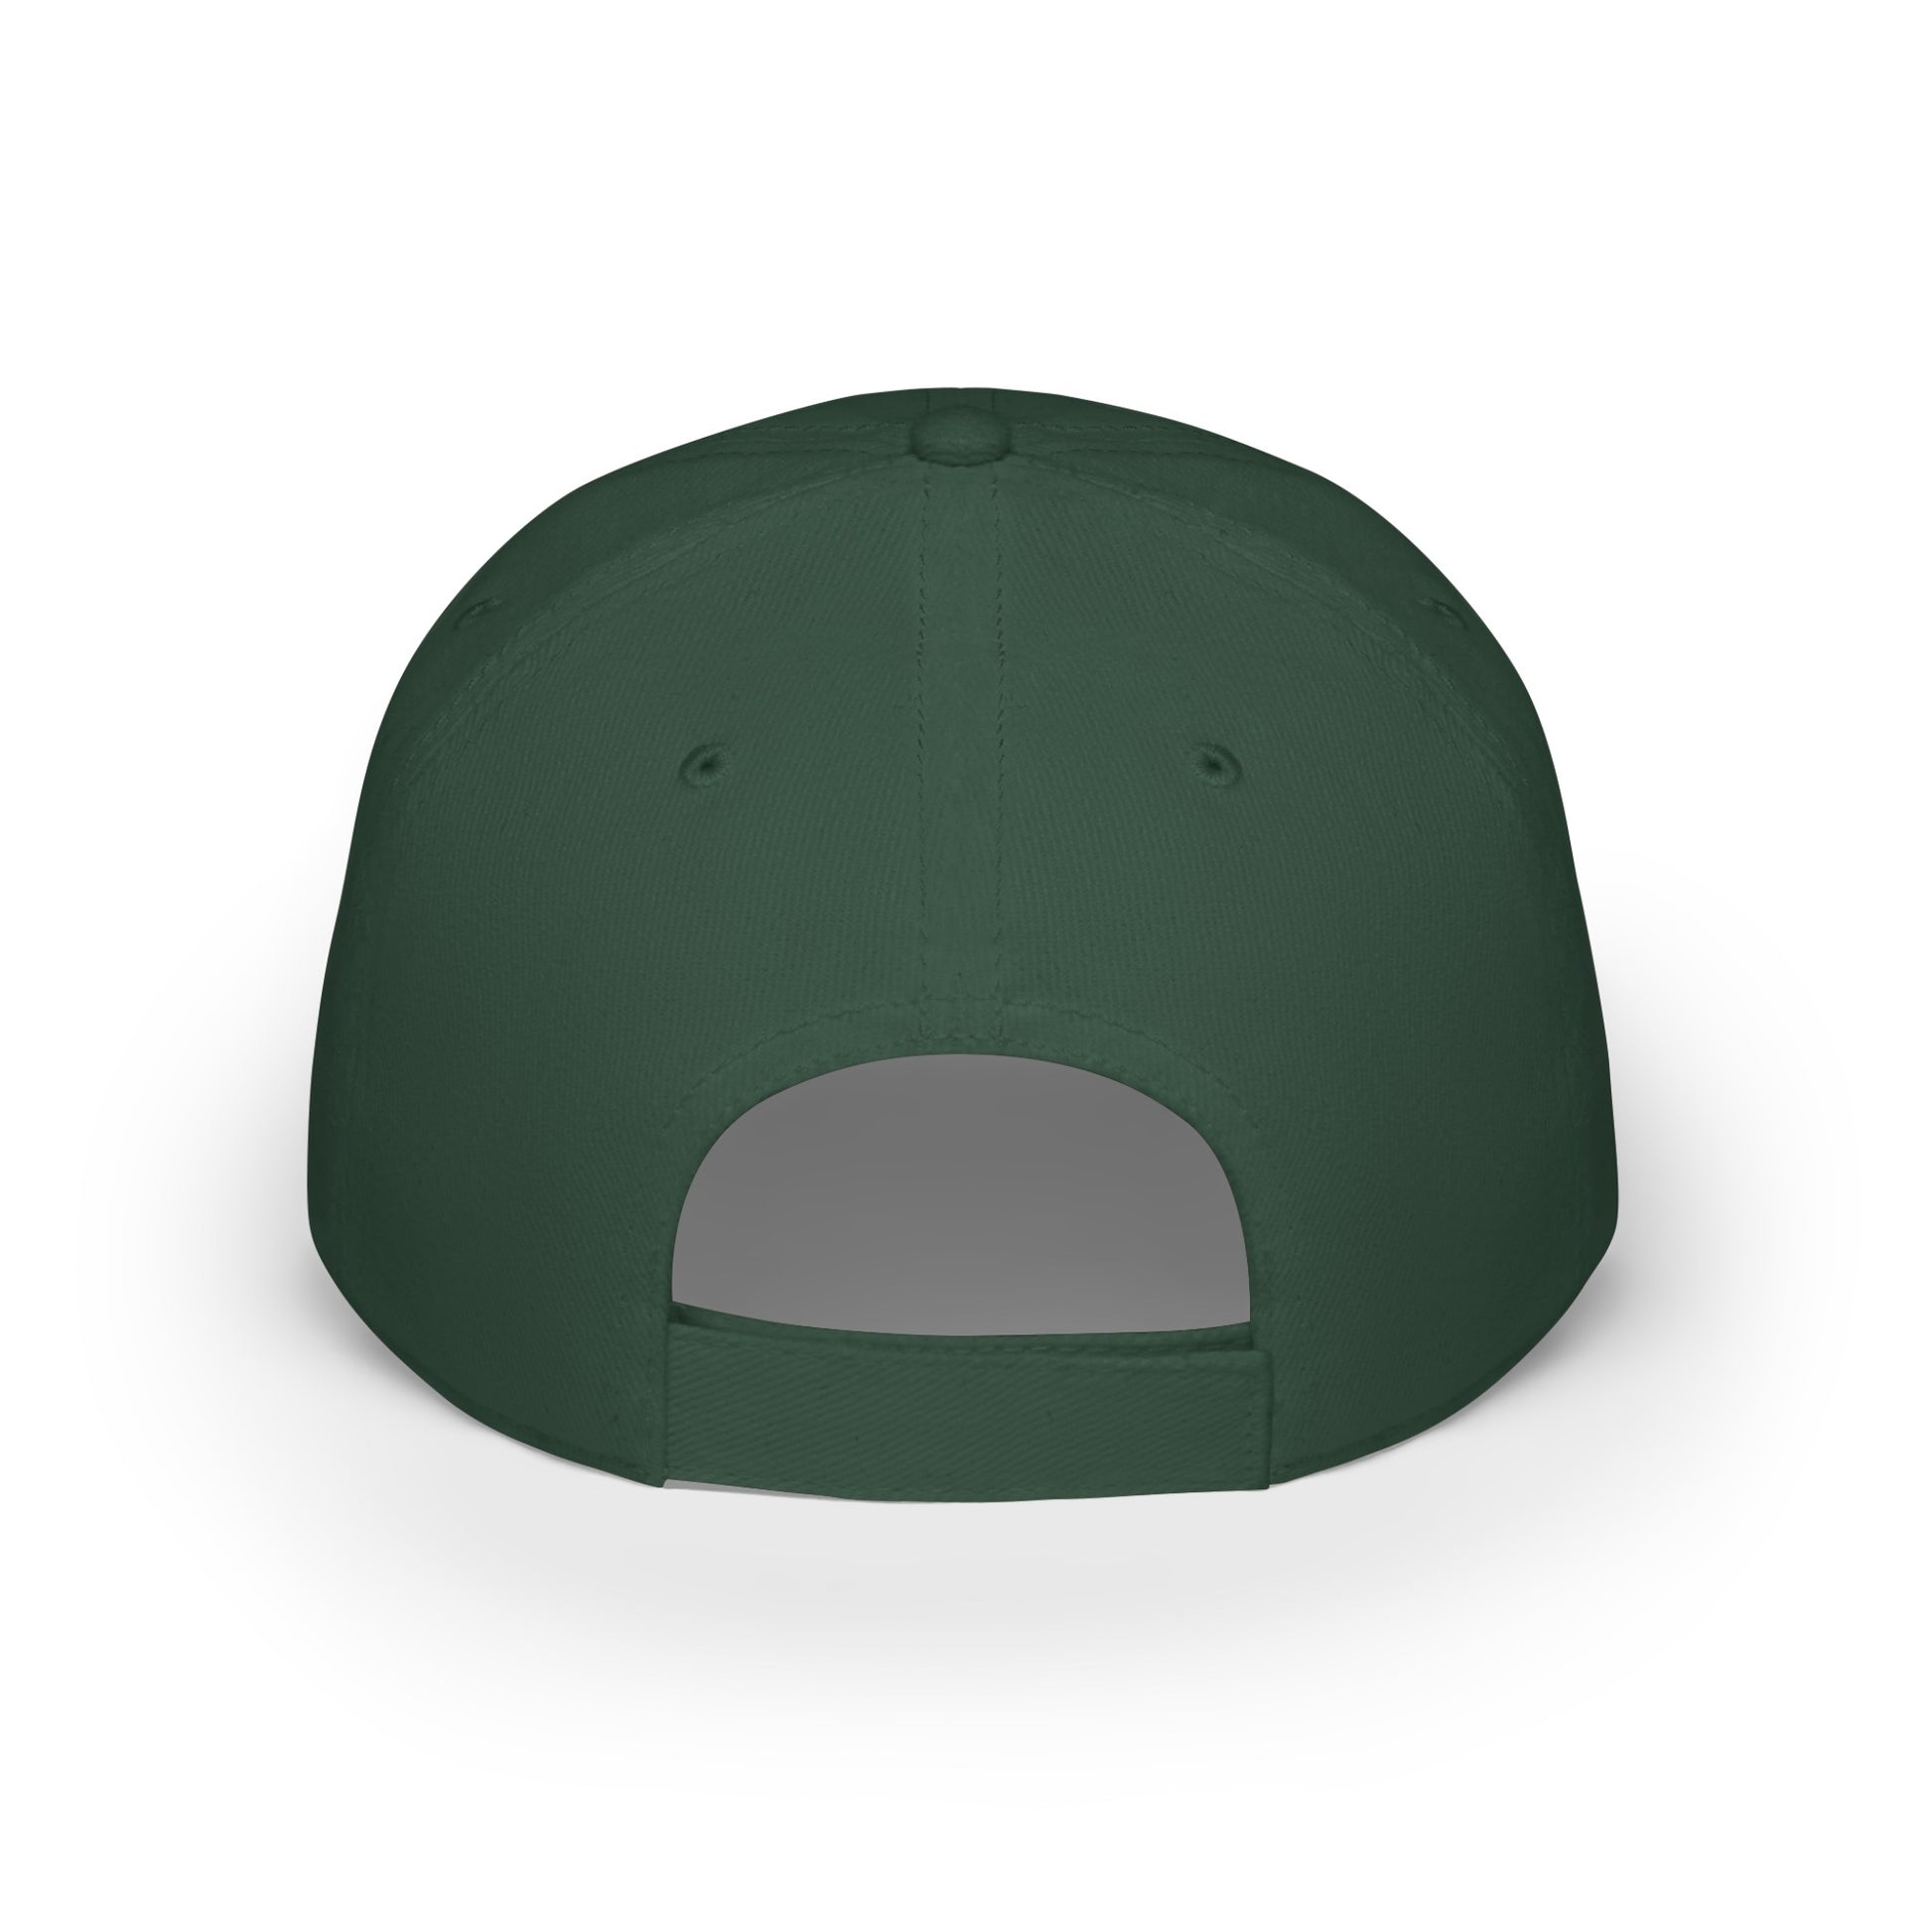 MDBTDJ#WRGC - Low Profile Baseball Cap Tattooed Dj's Limited Edition, Hats, Tattooed Djs Shop